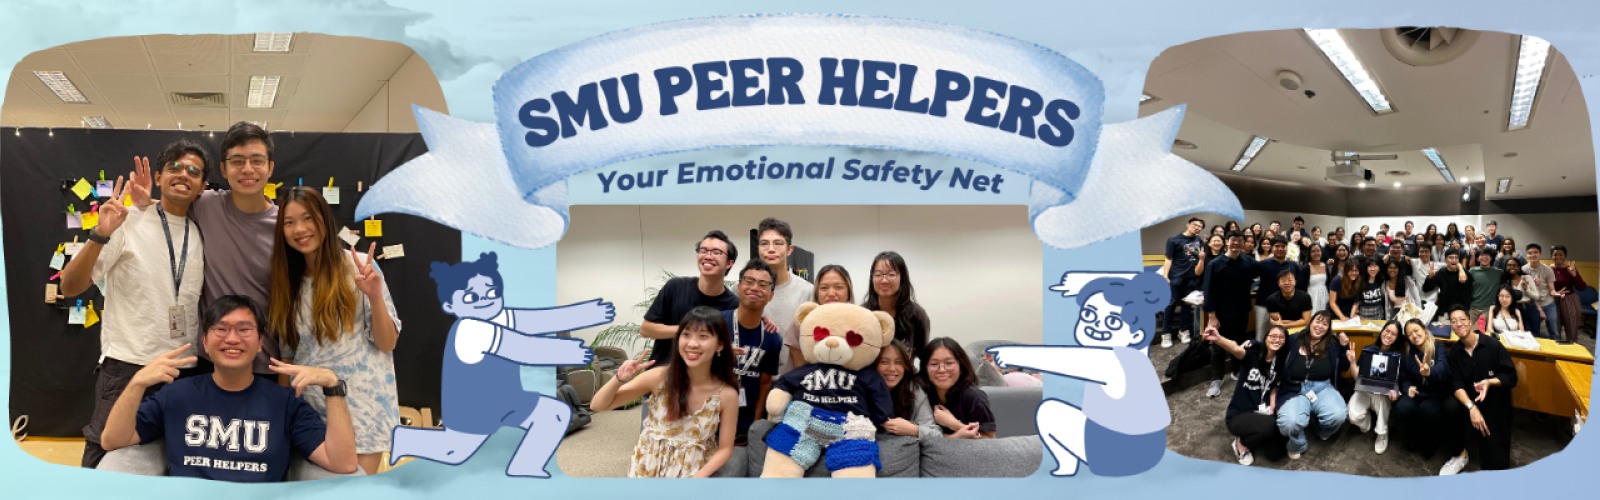 SMU Peer Helpers Banner